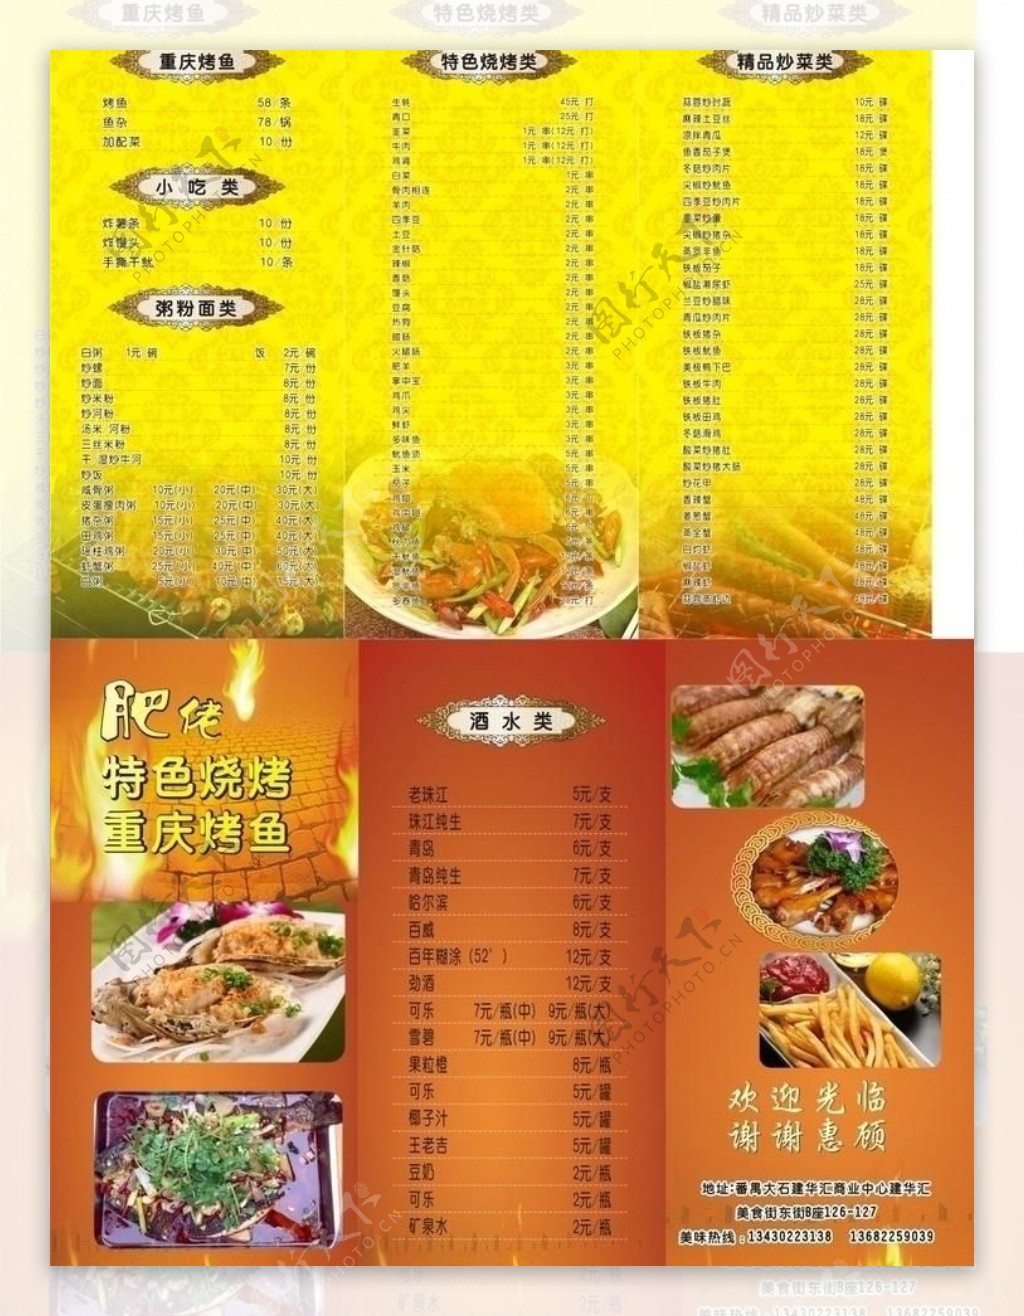 烧烤三折页菜单图片